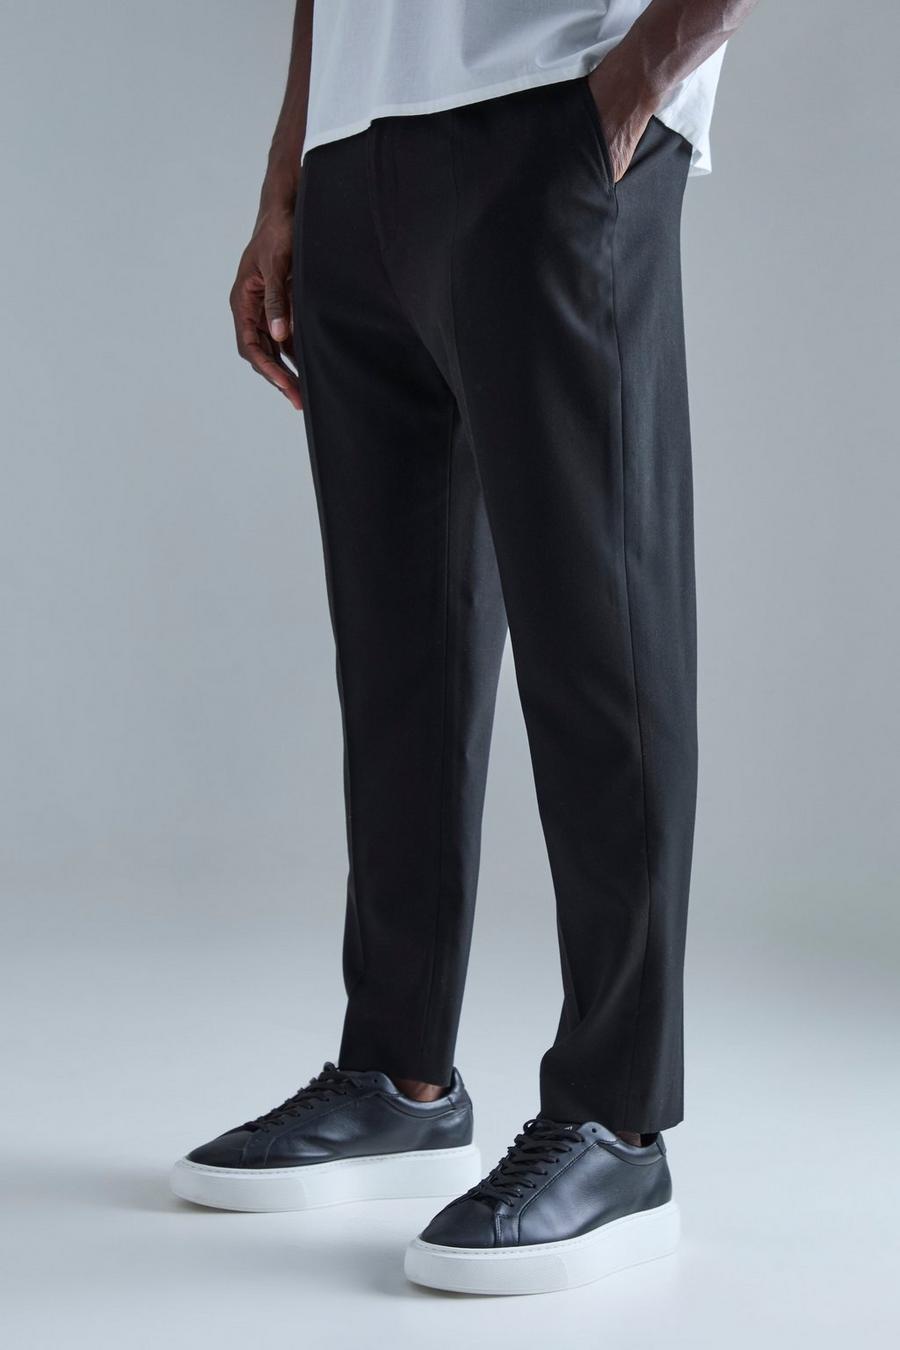 Men's Suiting & Dress Pants - Shop Online Now